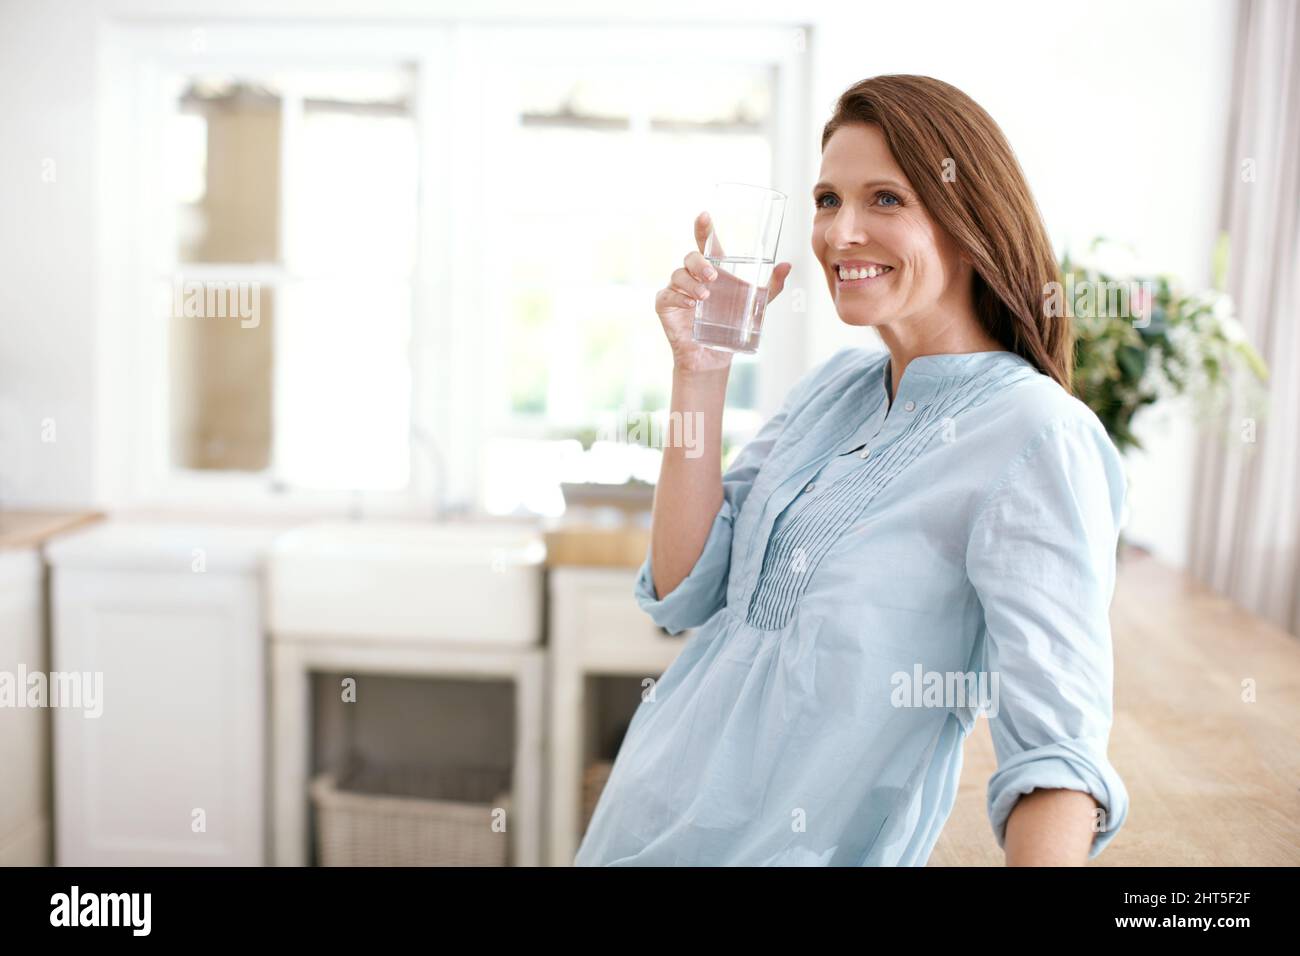 Mantenere idratato a casa. Una donna matura che tiene un bicchiere d'acqua e guarda via. Foto Stock